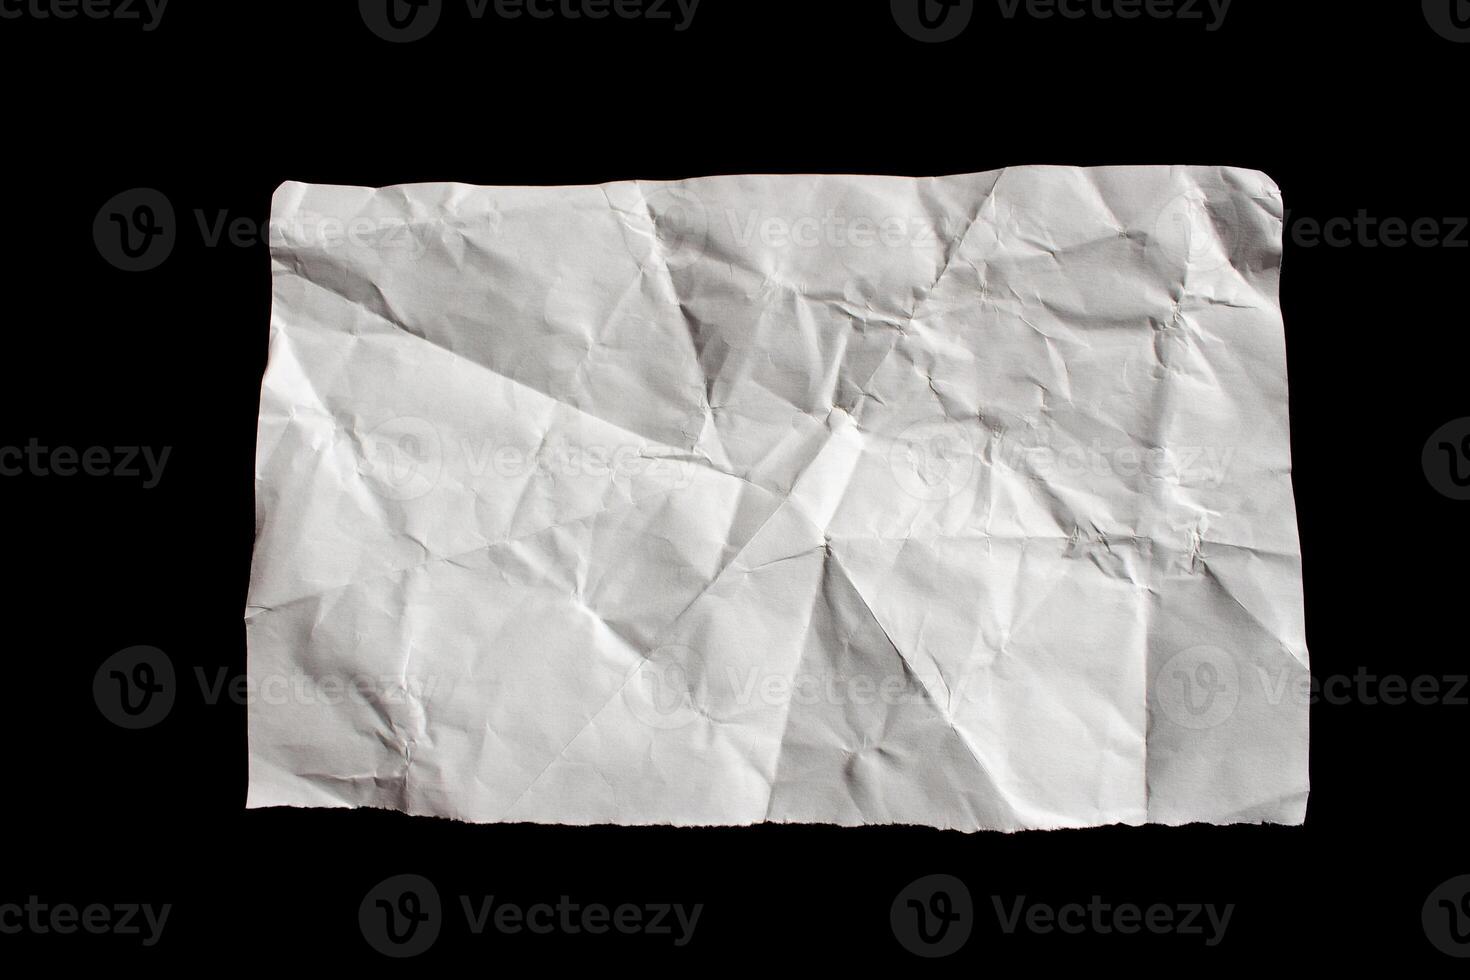 isolado rasgado papel pedaço. rasgado em branco papel com arestas. foto